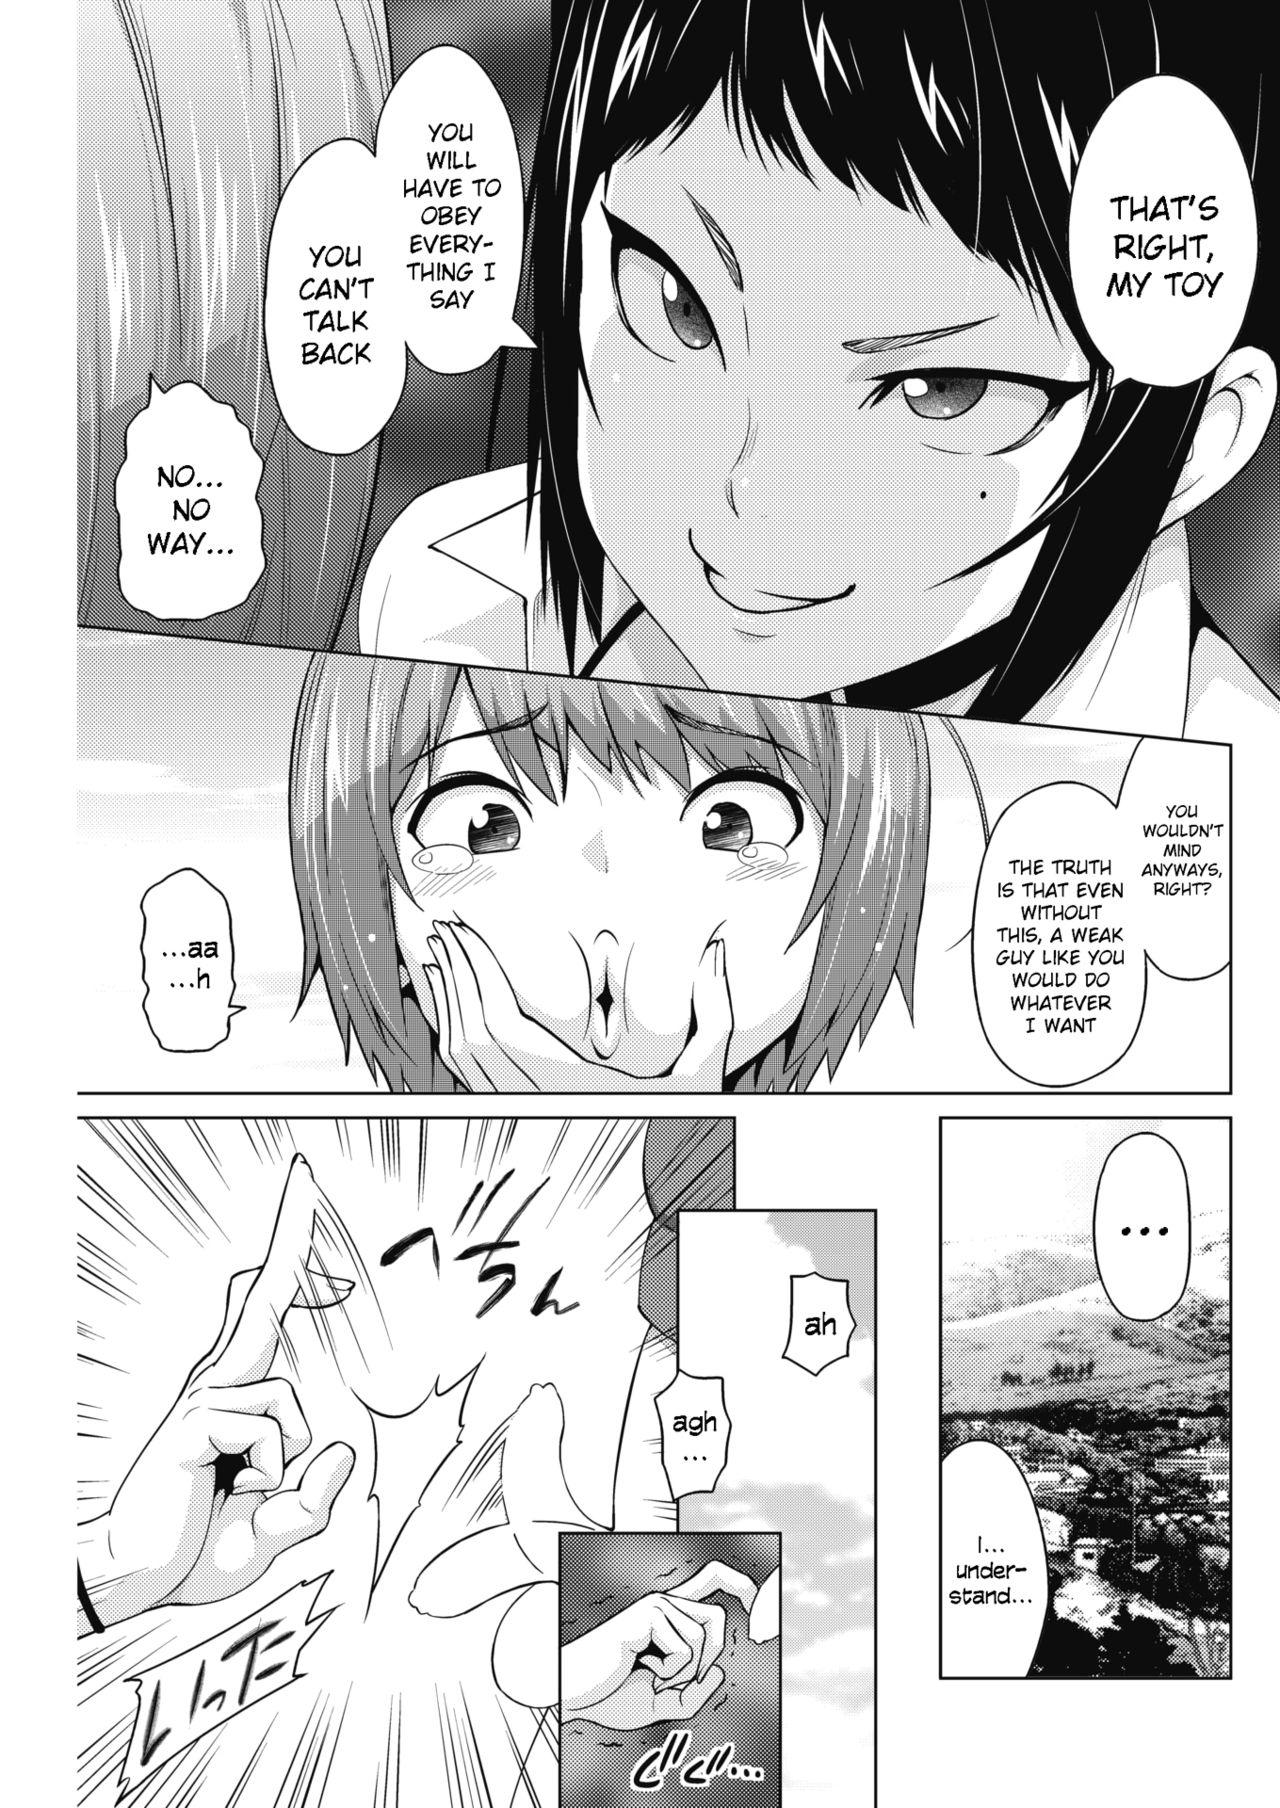 Outdoor Otoguro Miya no Oasobi #1 Teenage Porn - Page 7